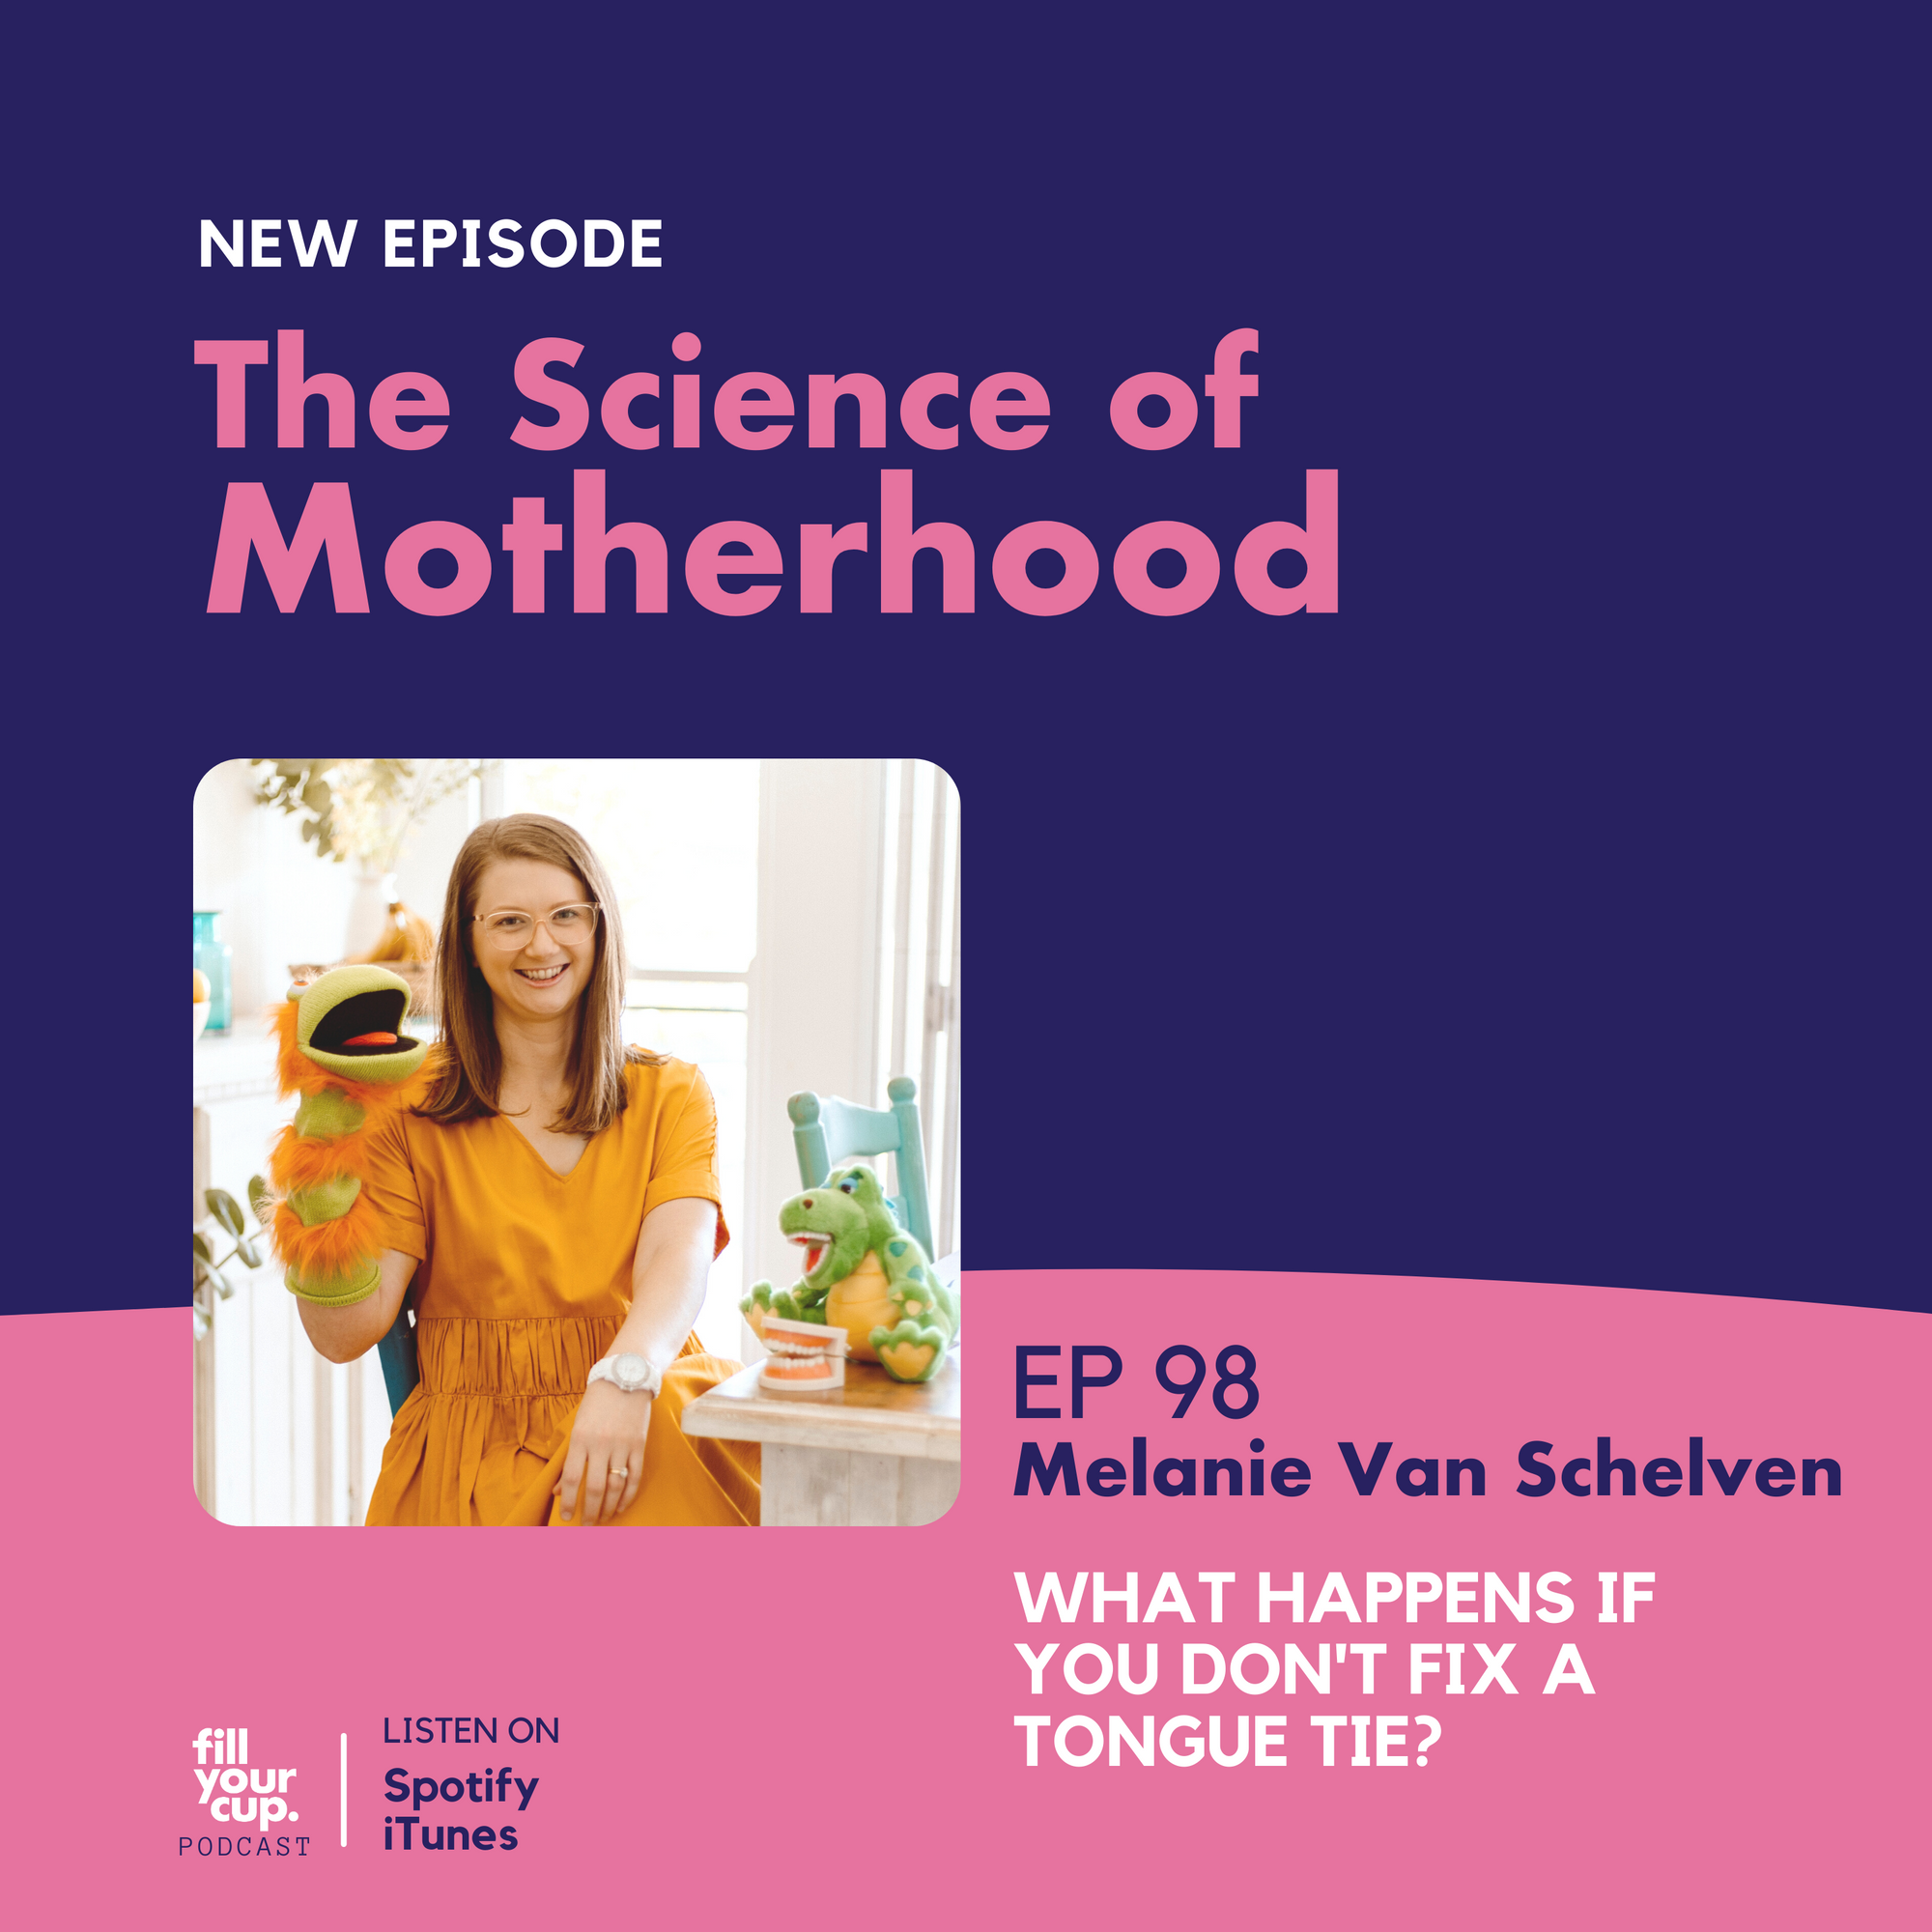 Ep 98. Melanie Van Schelven - What happens if you don't fix a tongue tie?